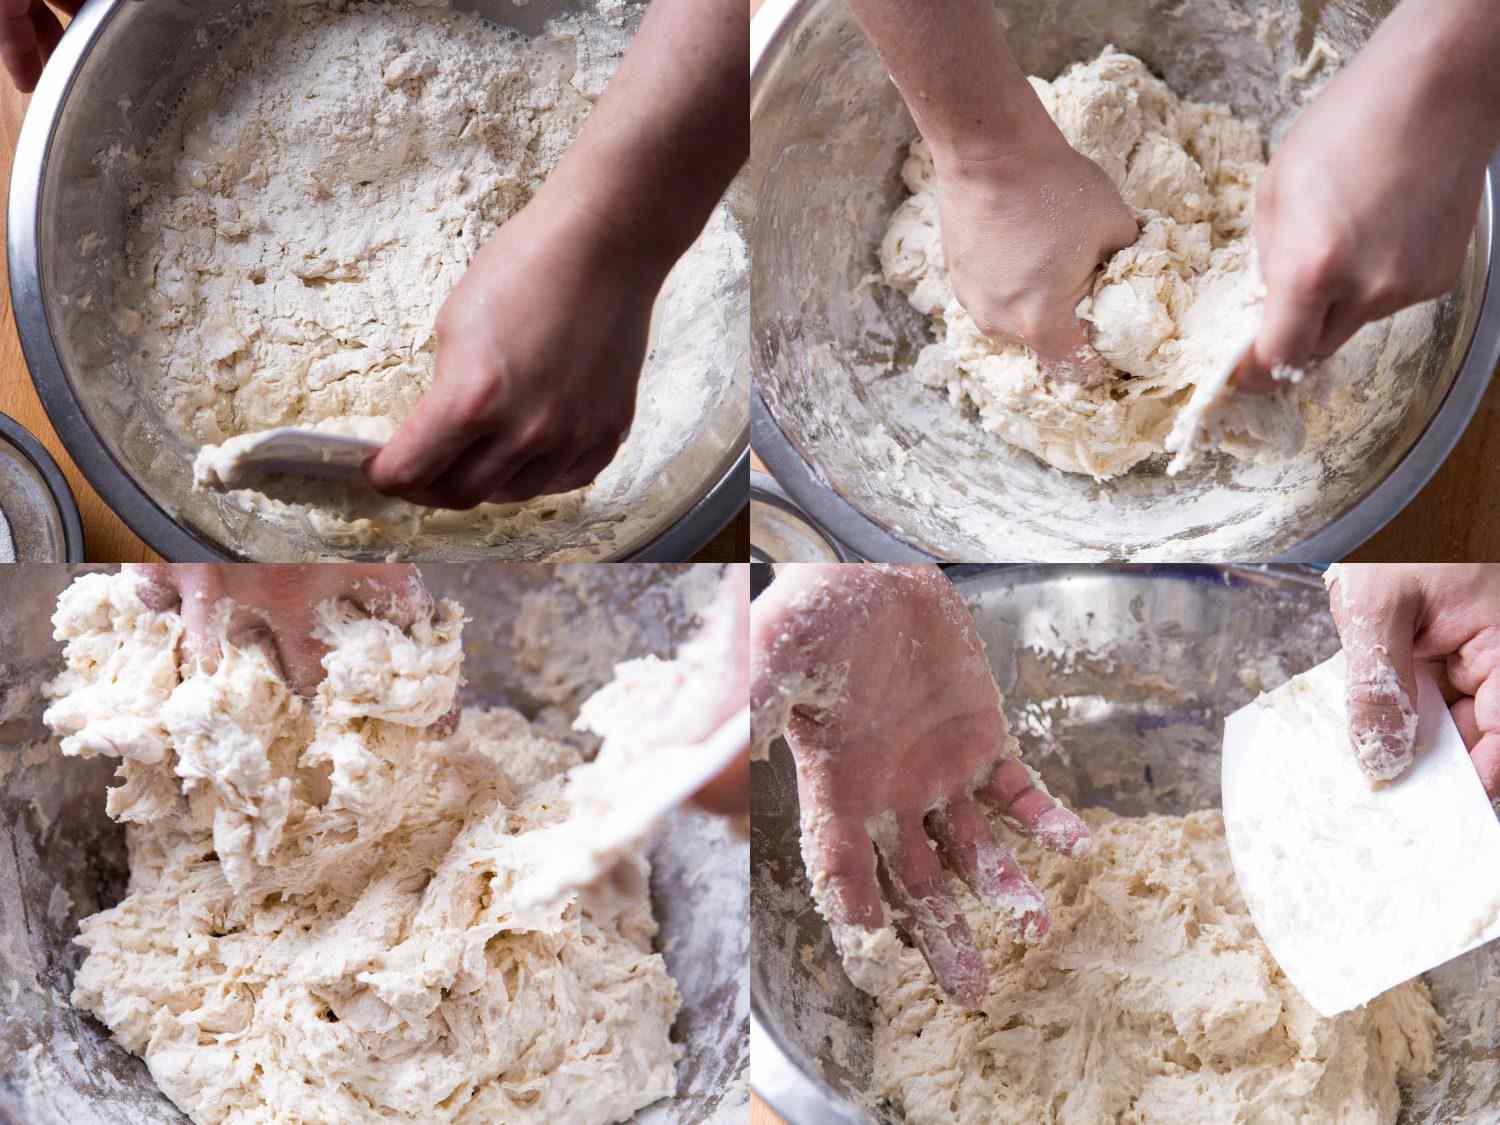 一幅拼贴画展示了一个非常潮湿和蓬松的面包面团放在一个金属搅拌碗里，两只手在搅拌它